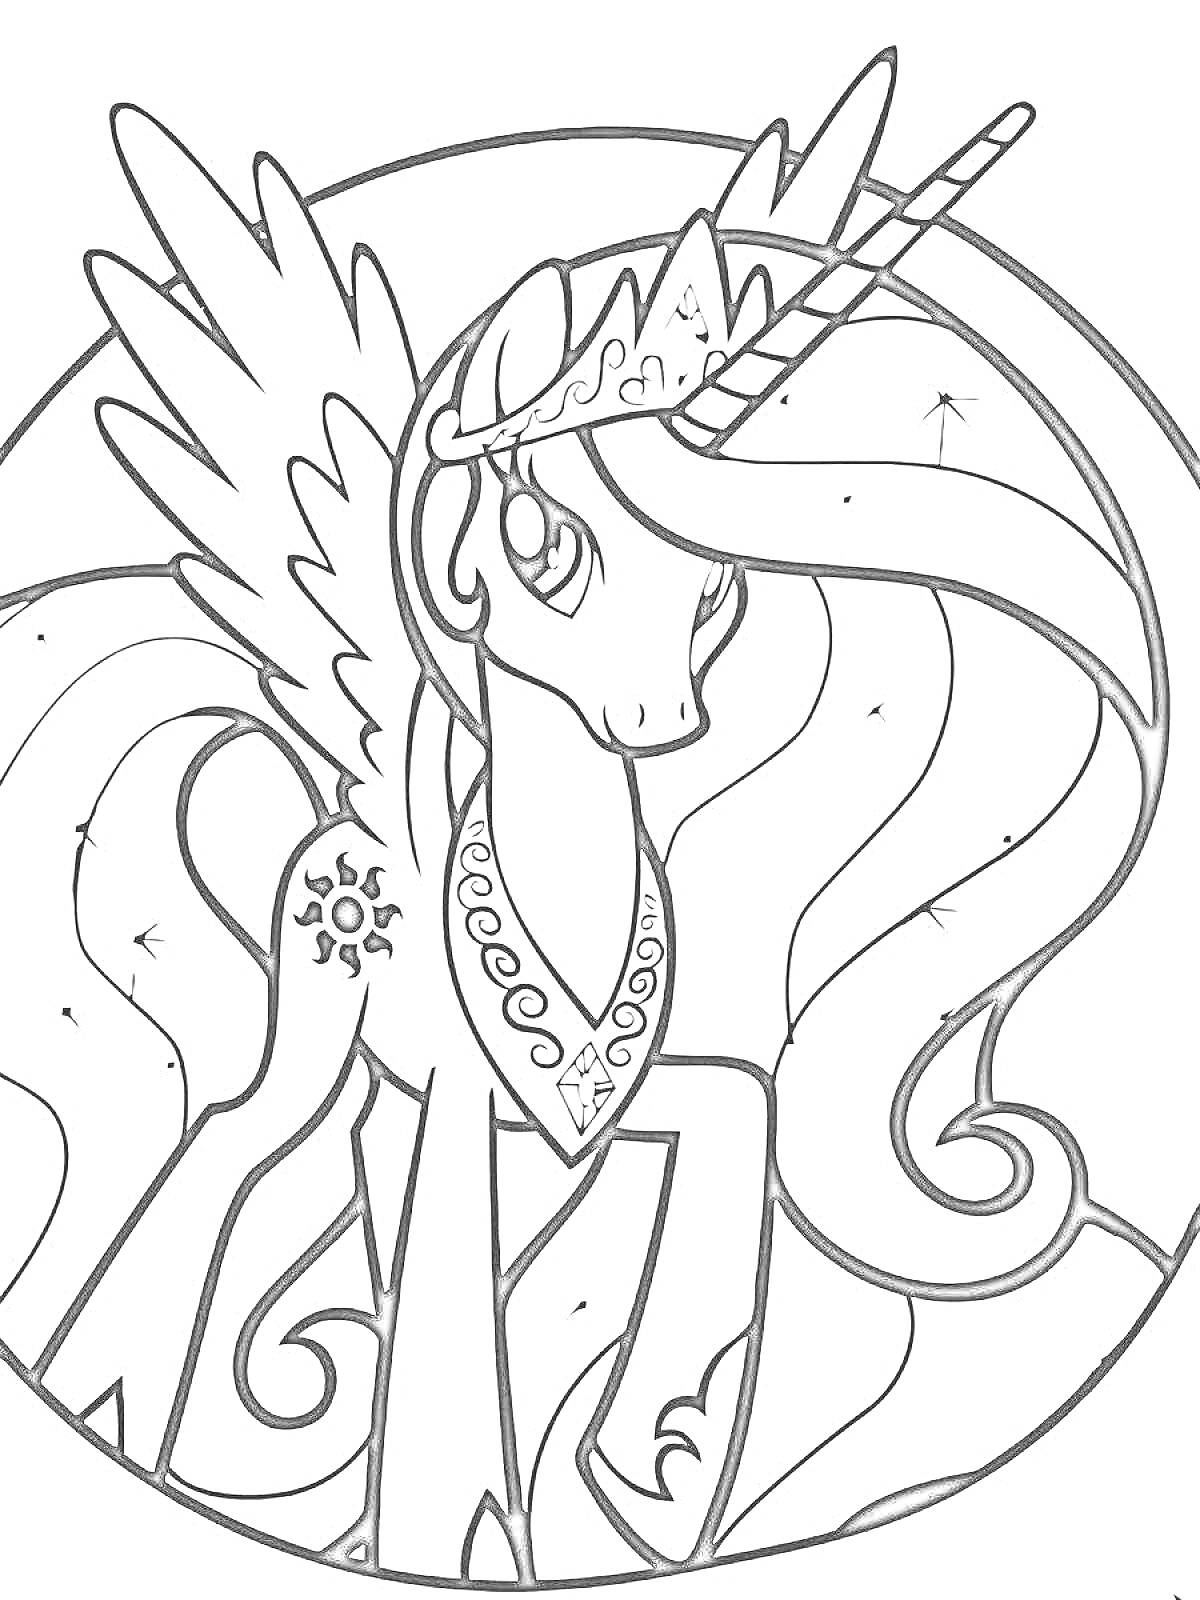 Раскраска Принцесса Селестия с большим крыльями и рогом, корона на голове, кьюти-марка в виде солнца, длинная волнистая грива, ожерелье и браслеты на ногах